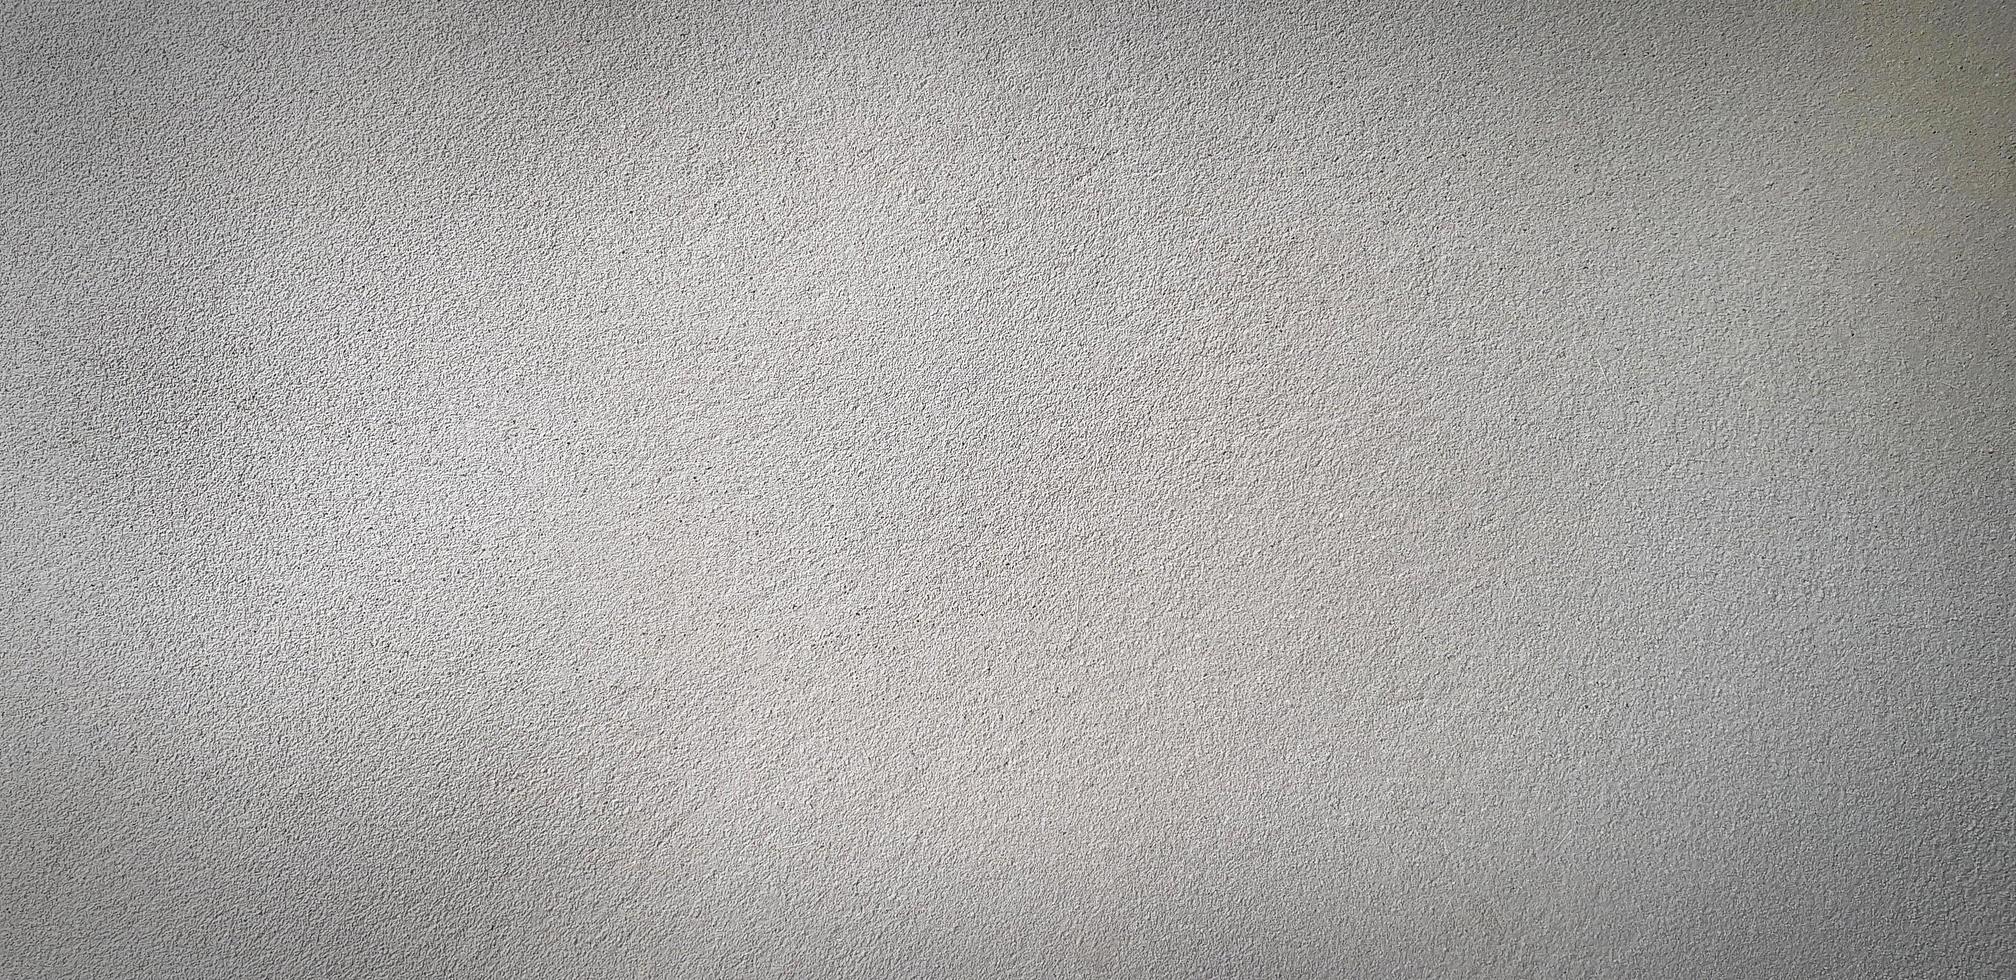 grijs grunge beton of grijs cement muur voor achtergrond in zwart en wit toon. retro of ruw behang en structuur van oppervlakte concept. monochroom kleur foto